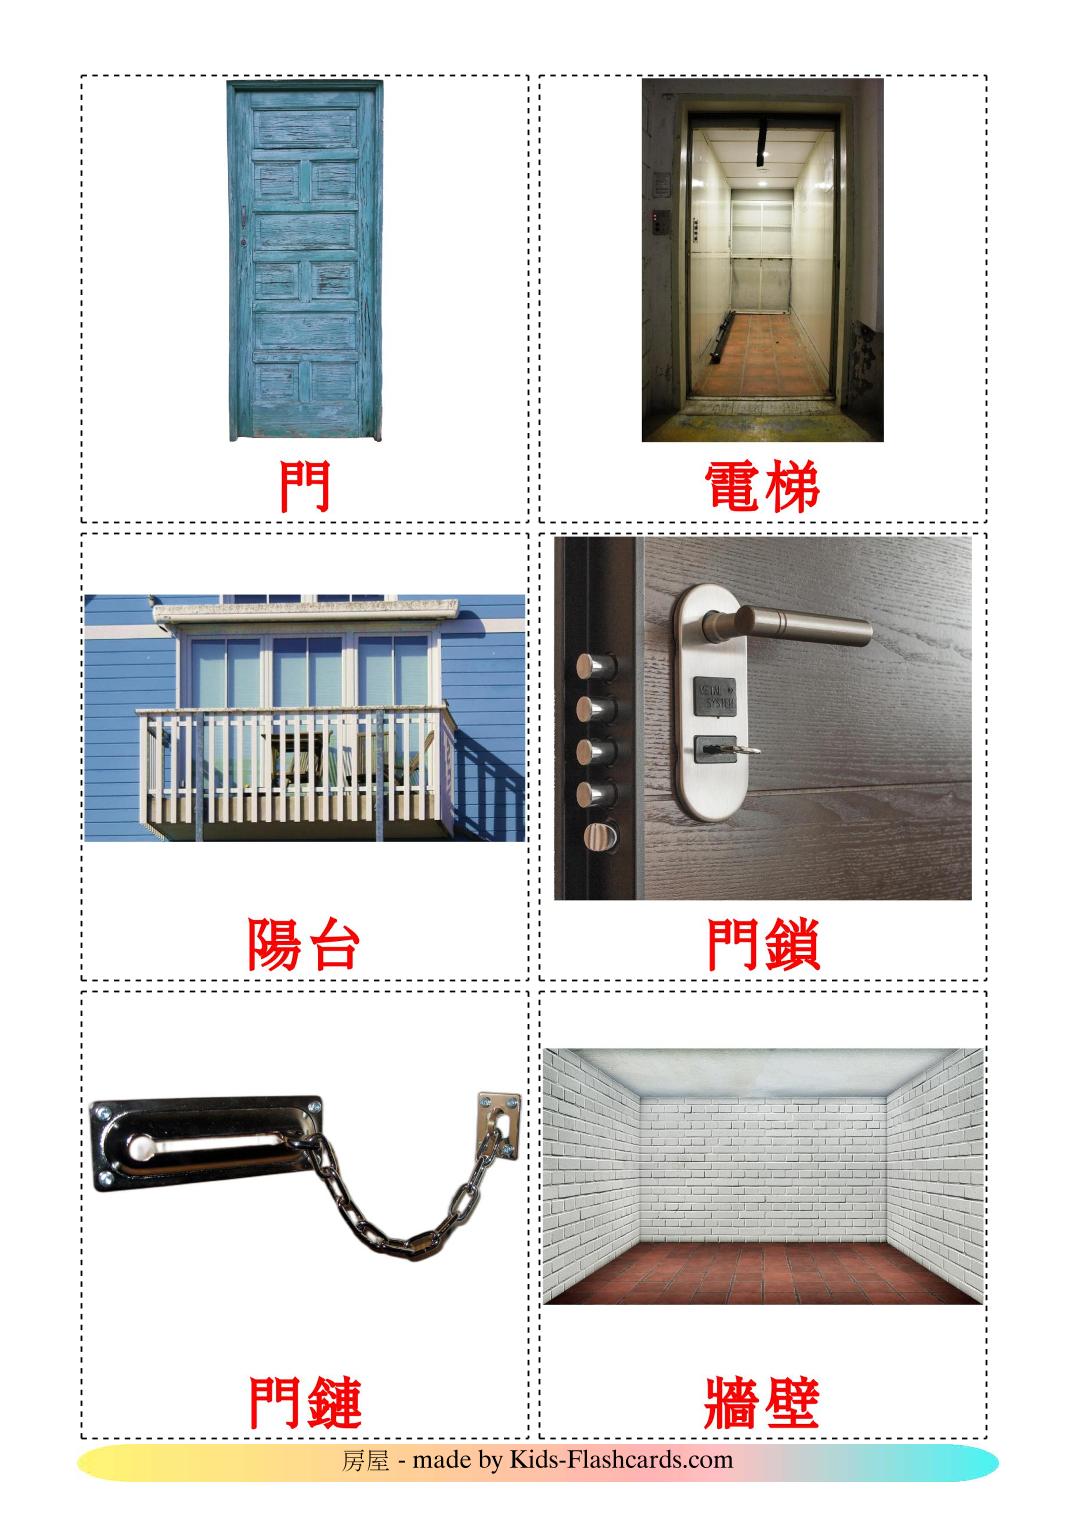 Casa - 25 flashcards cinese(tradizionale) stampabili gratuitamente